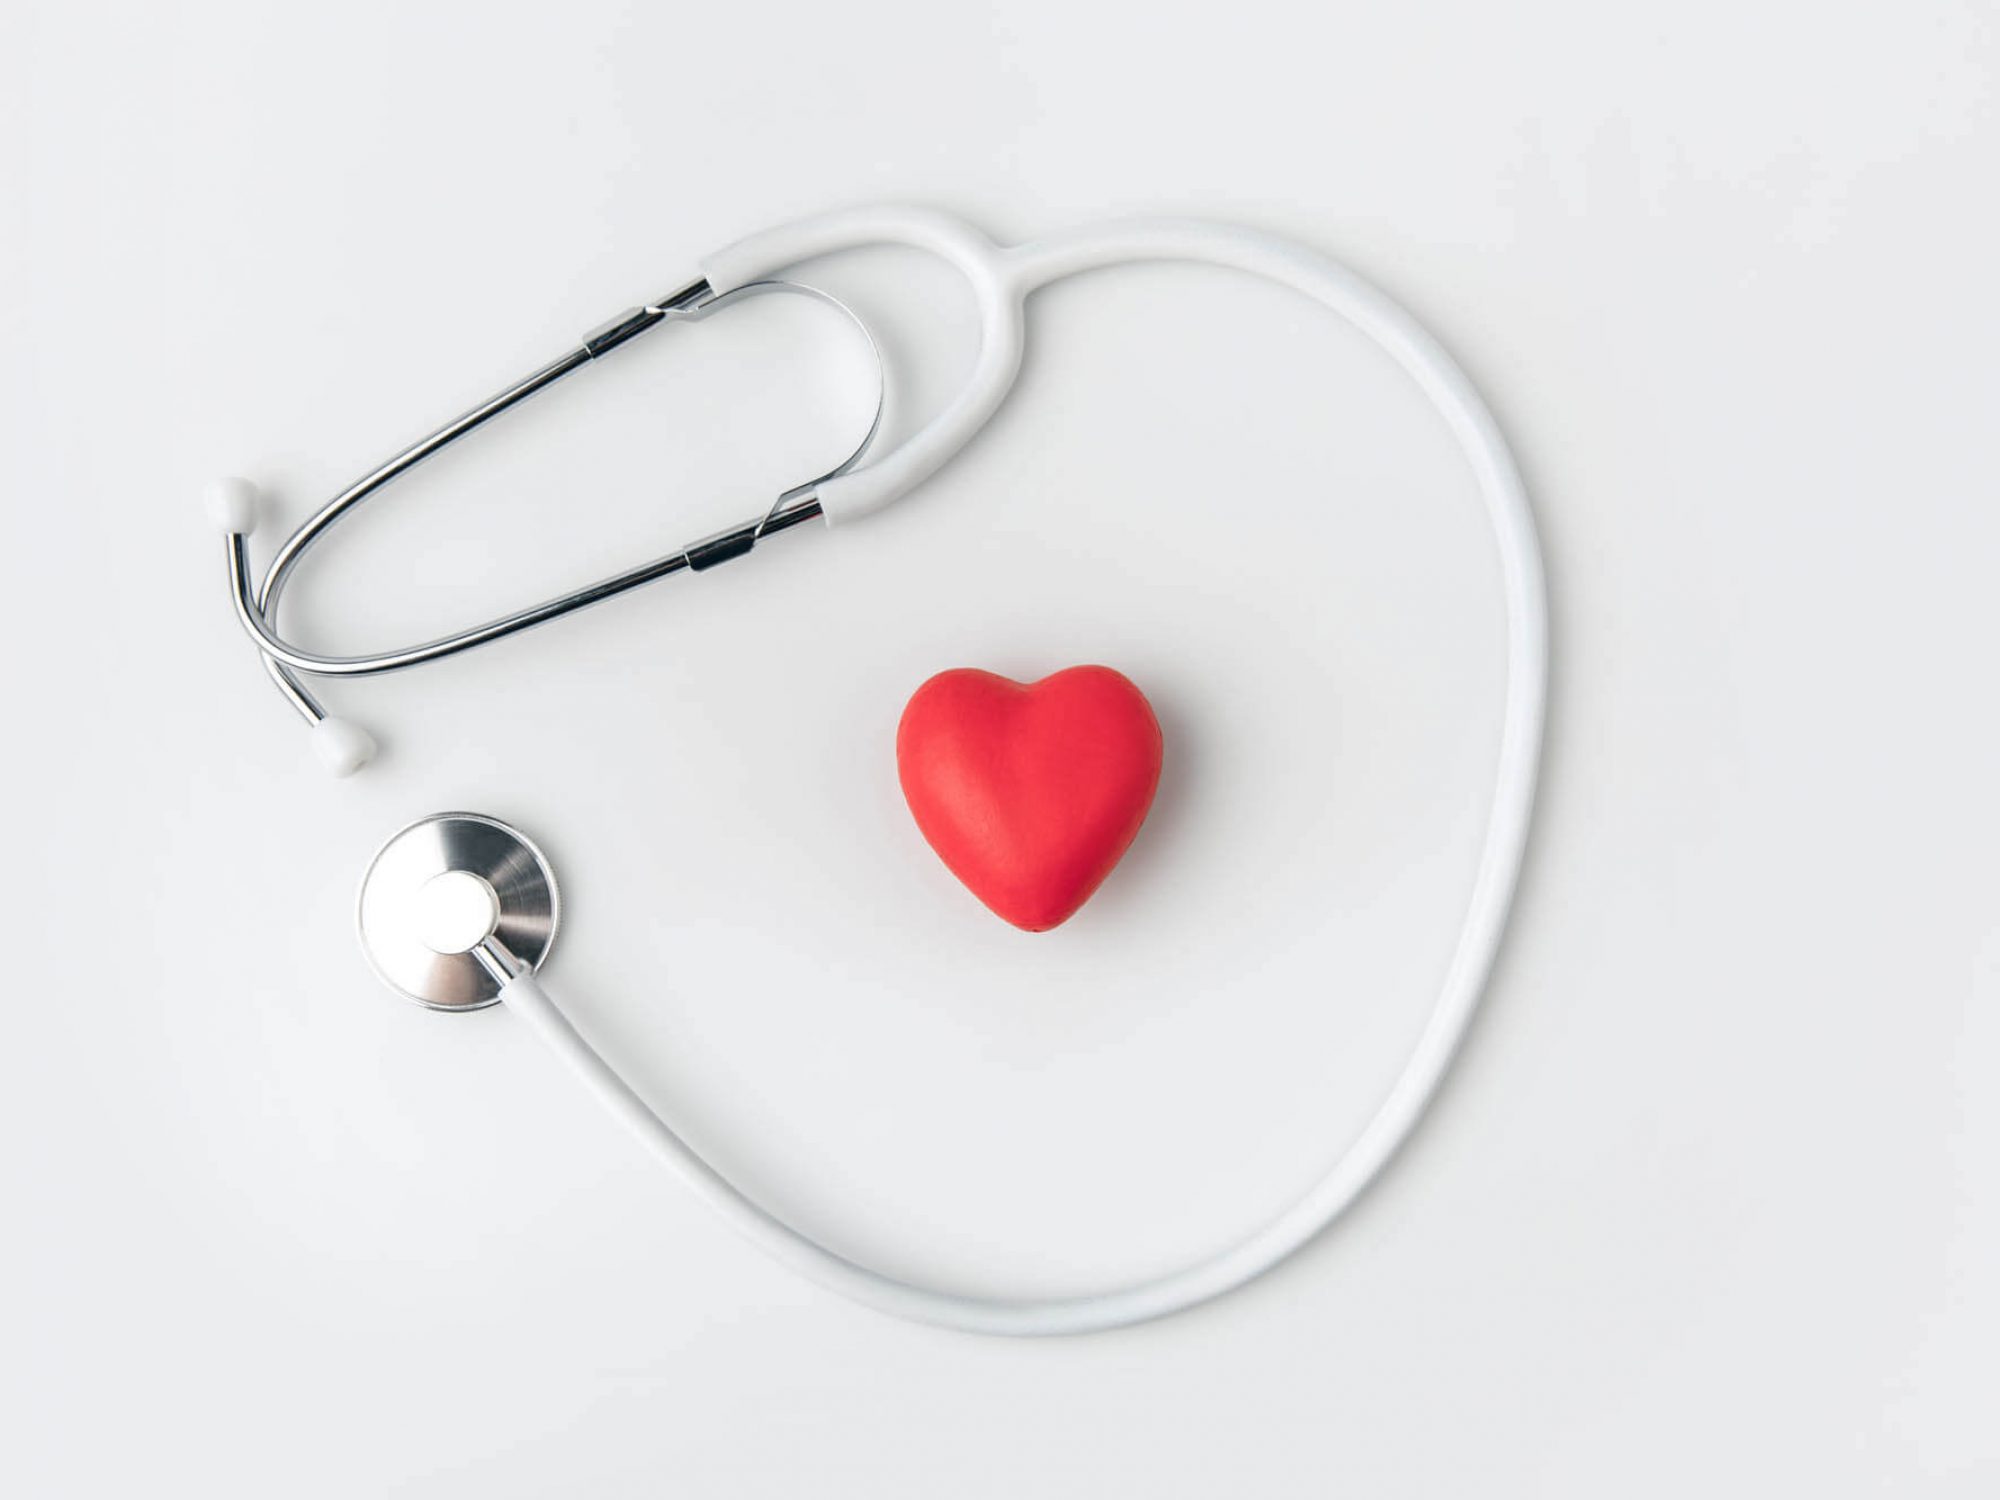 ניתוח בריאטרי יכול לסייע לבריאות הלב באופן משמעותי